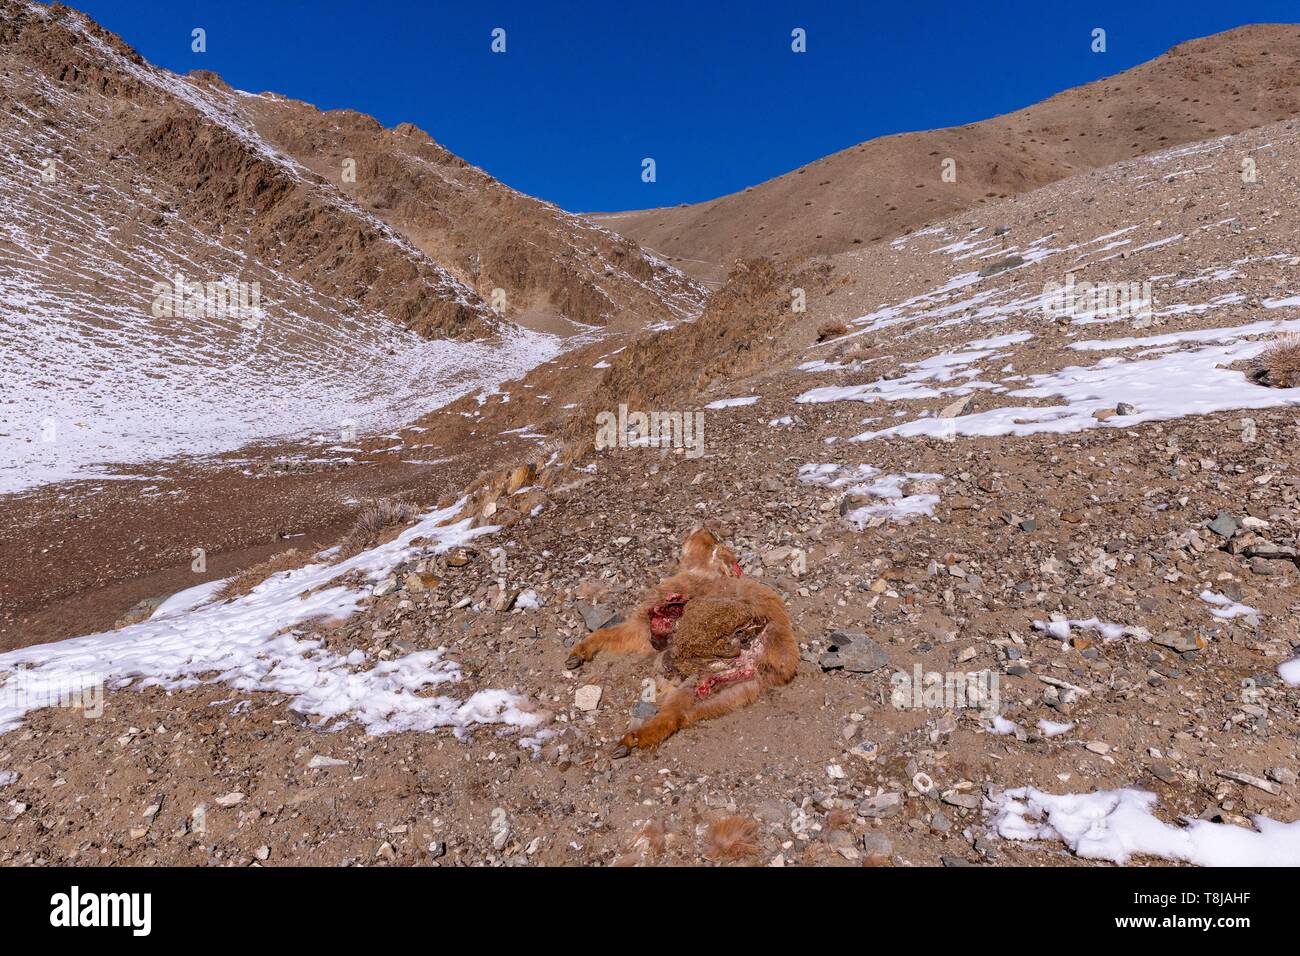 Die Mongolei, im Westen der Mongolei, Altai Gebirge, das Tal mit Schnee und Fels, Kalb von einer Snow Leopard getötet Stockfoto